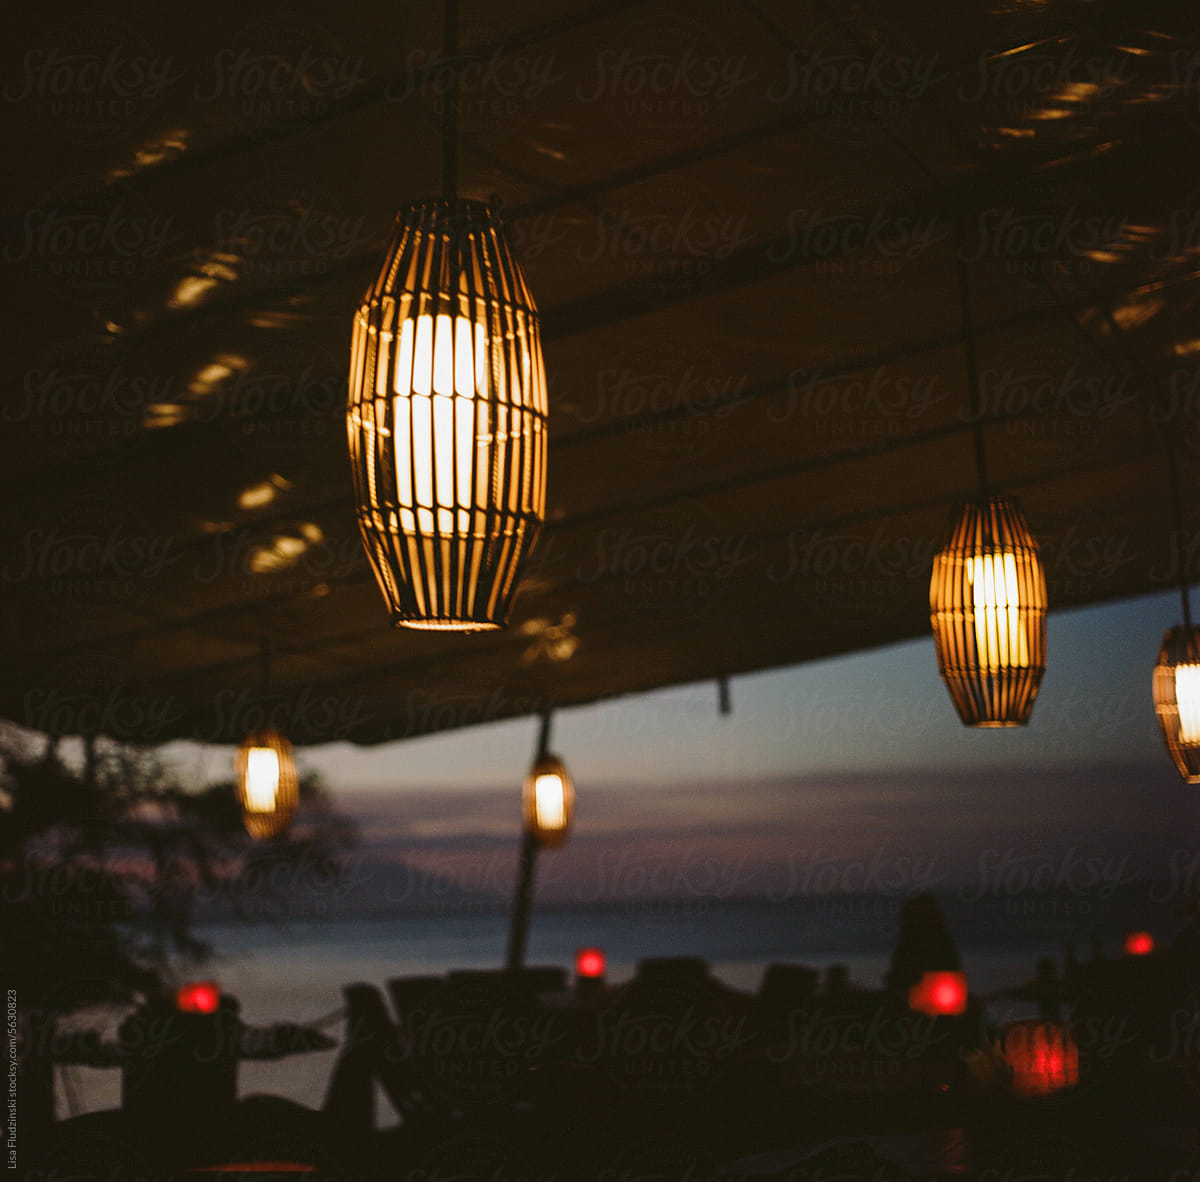 Lanterns in restaurant on Bali